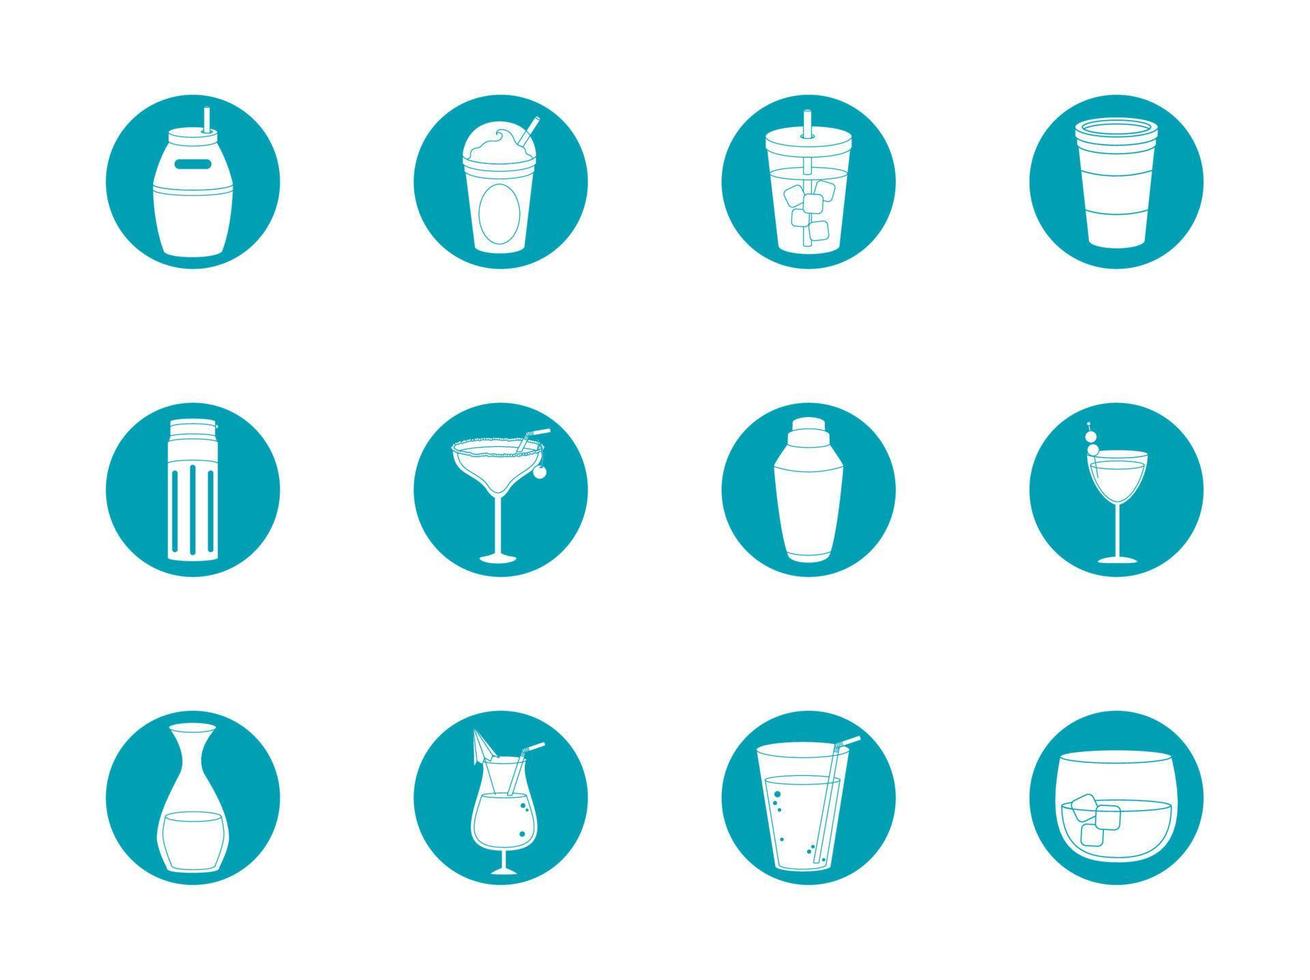 bebidas bebidas copas de vidrio botella licor alcohólico conjunto de iconos icono de estilo de bloque azul vector